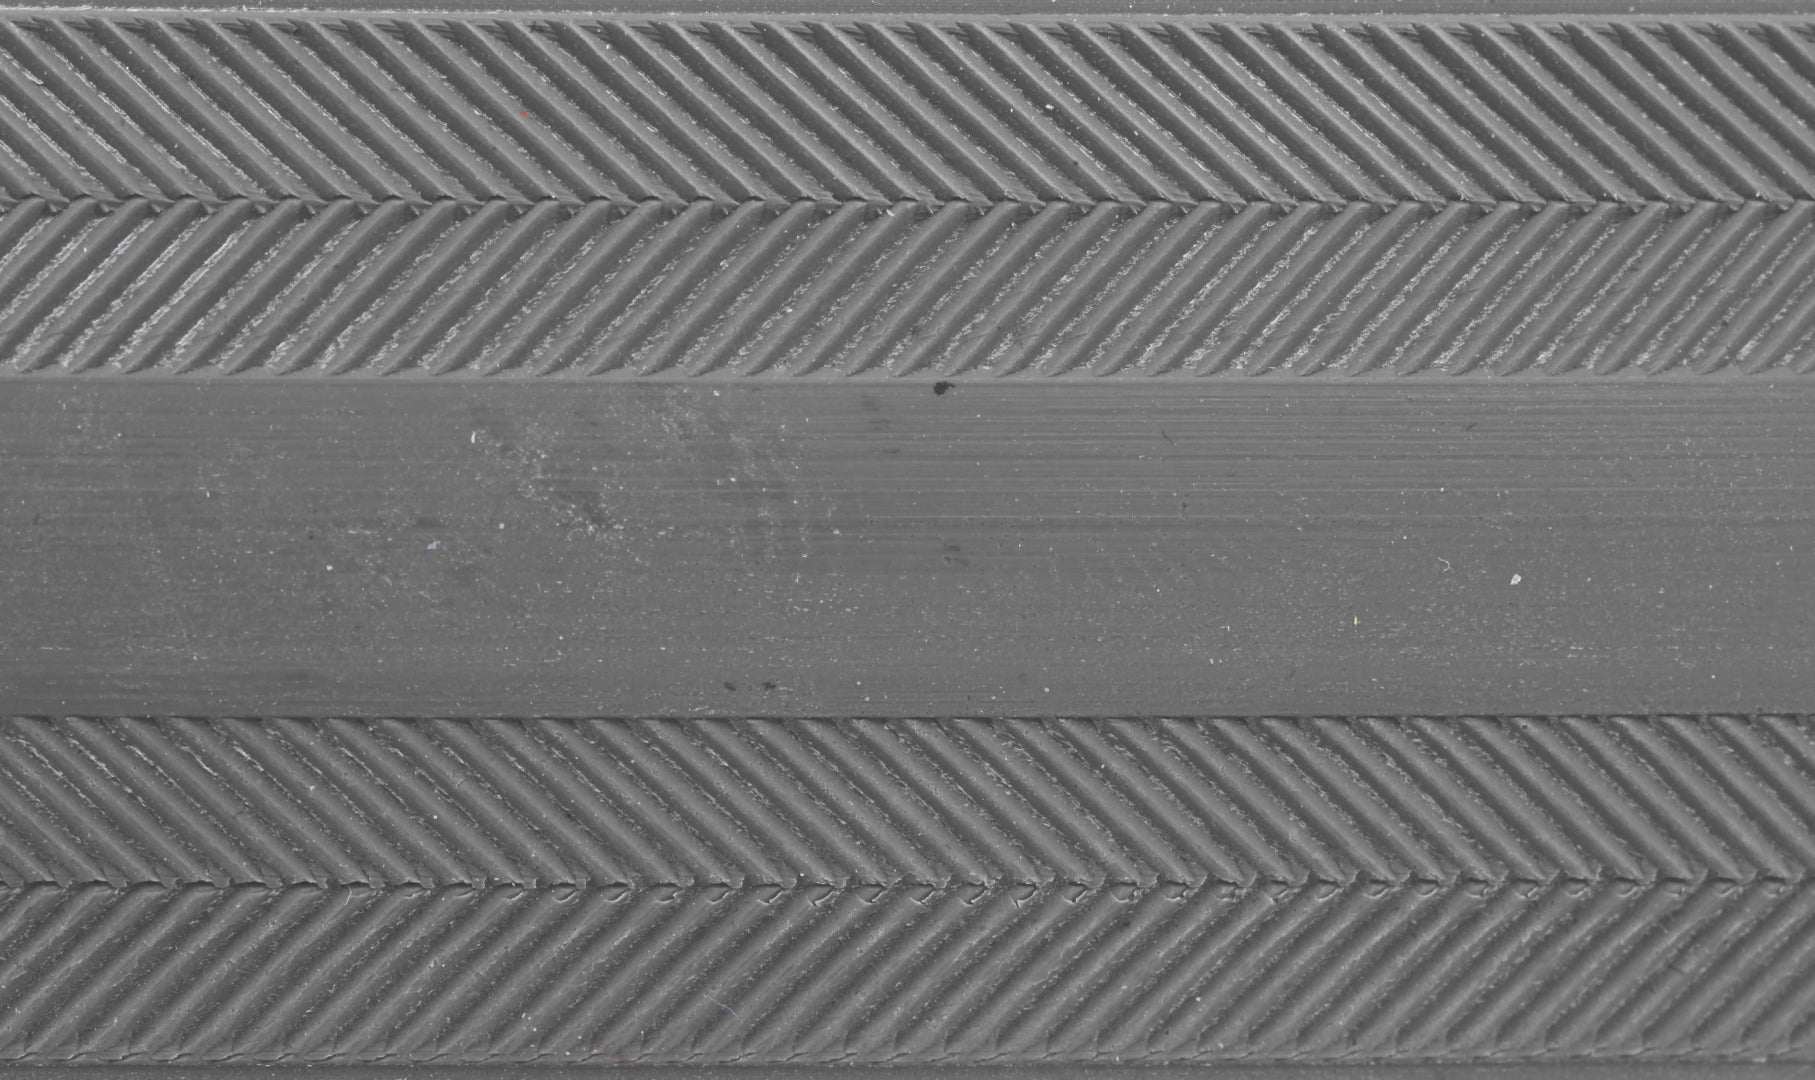 Boyau Tufo Hi Composite Carbon - Puncture Proof Ply